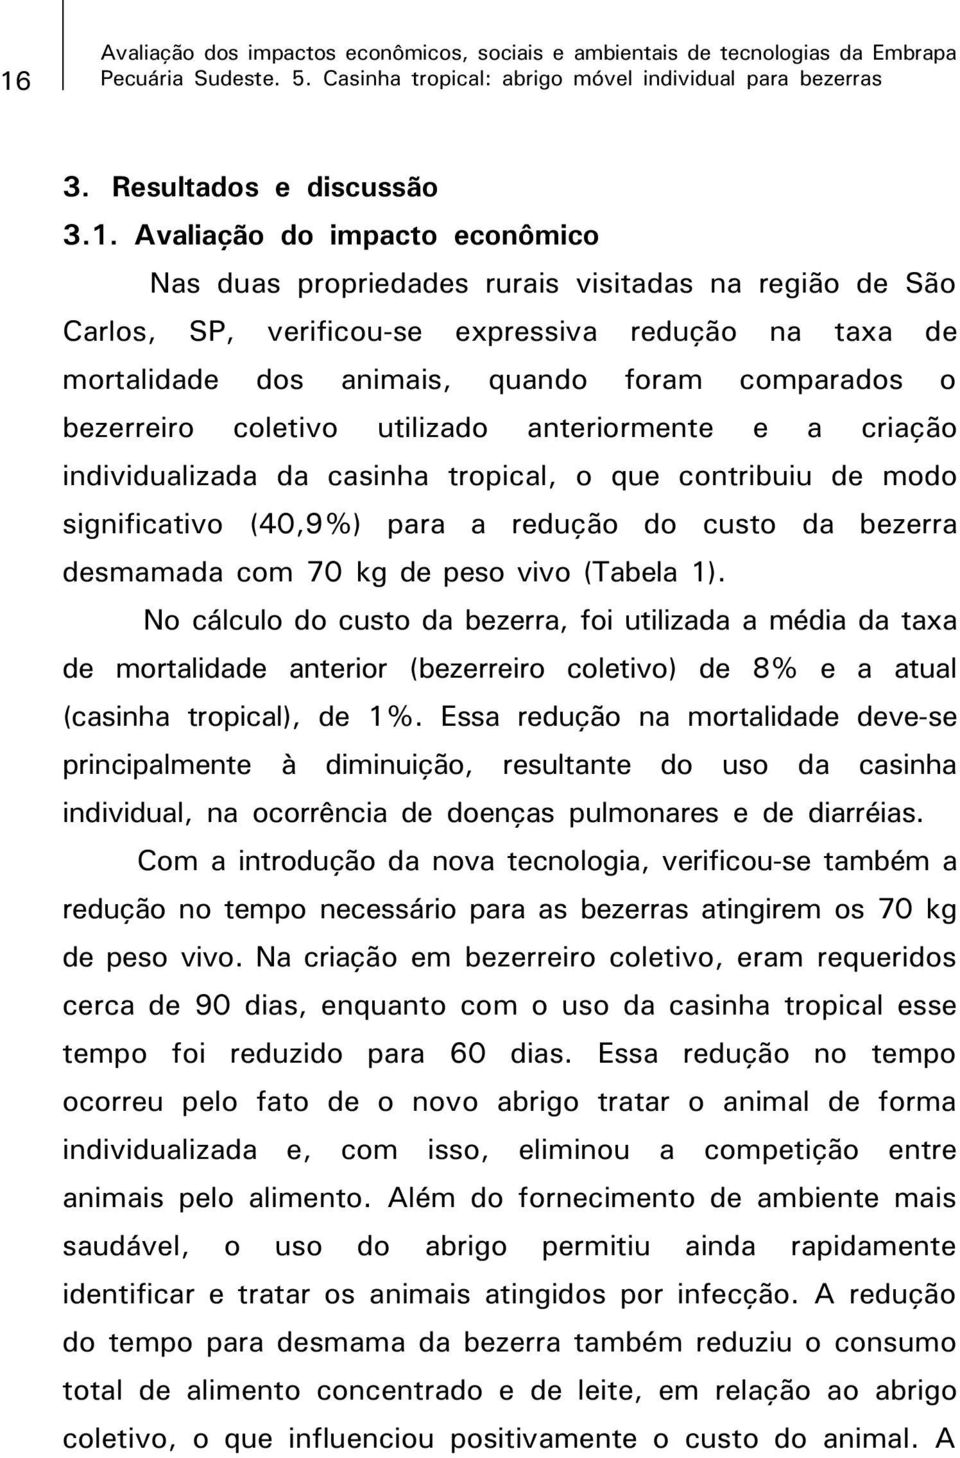 tropical, o que contribuiu de modo significativo (40,9%) para a redução do custo da bezerra desmamada com 70 kg de peso vivo (Tabela 1).